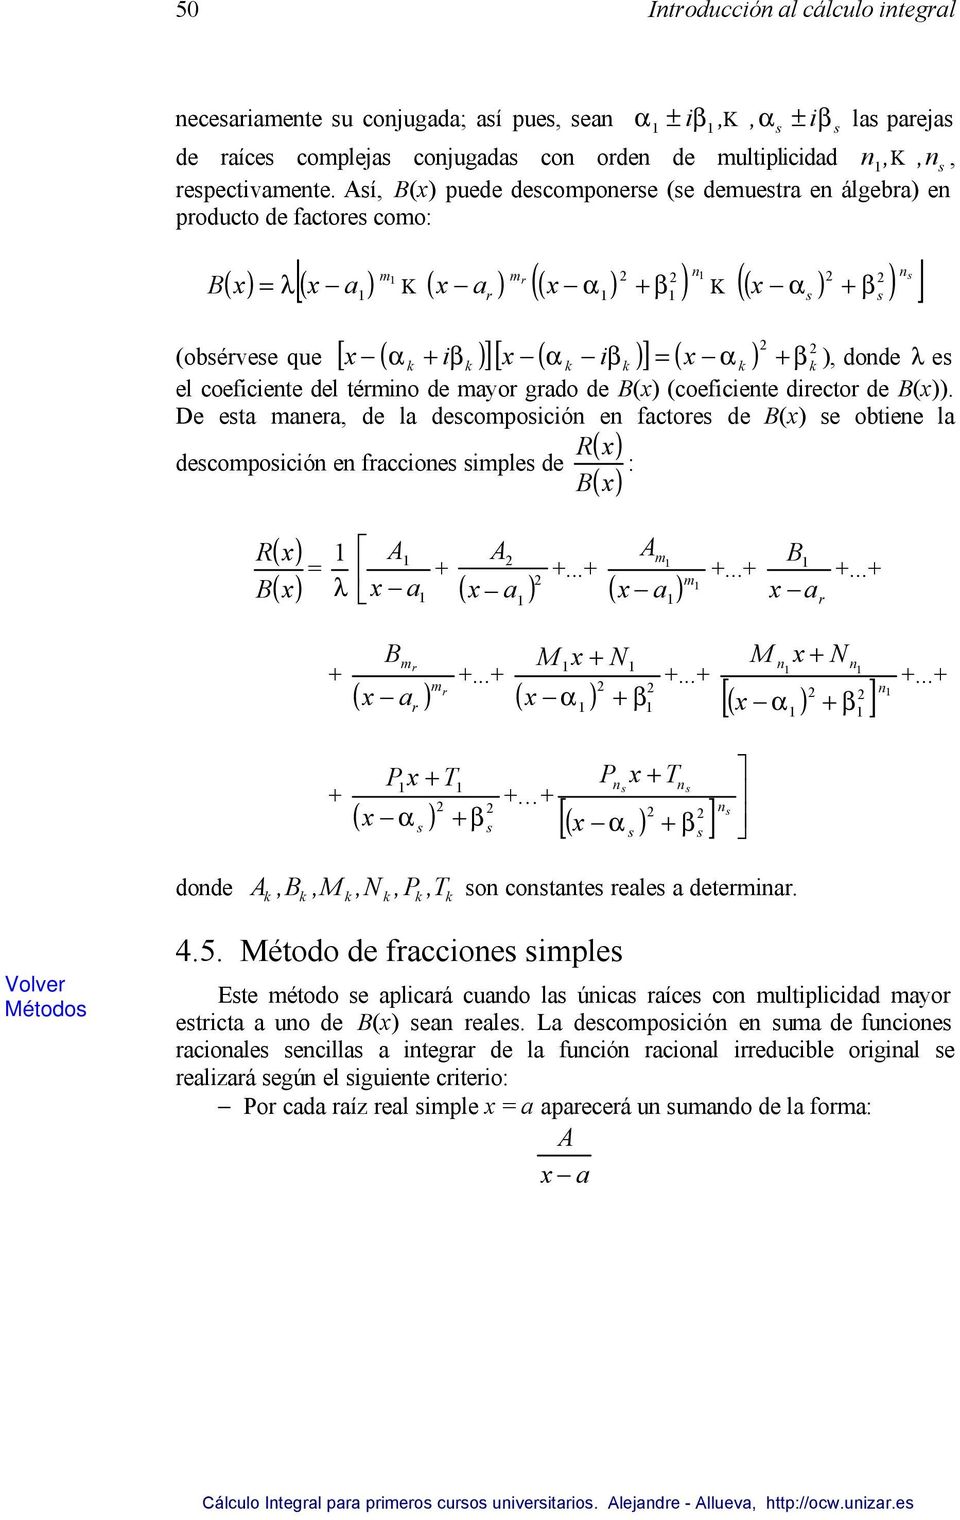 λ e el coeficiente del término de mayor grado de () (coeficiente director de ()).